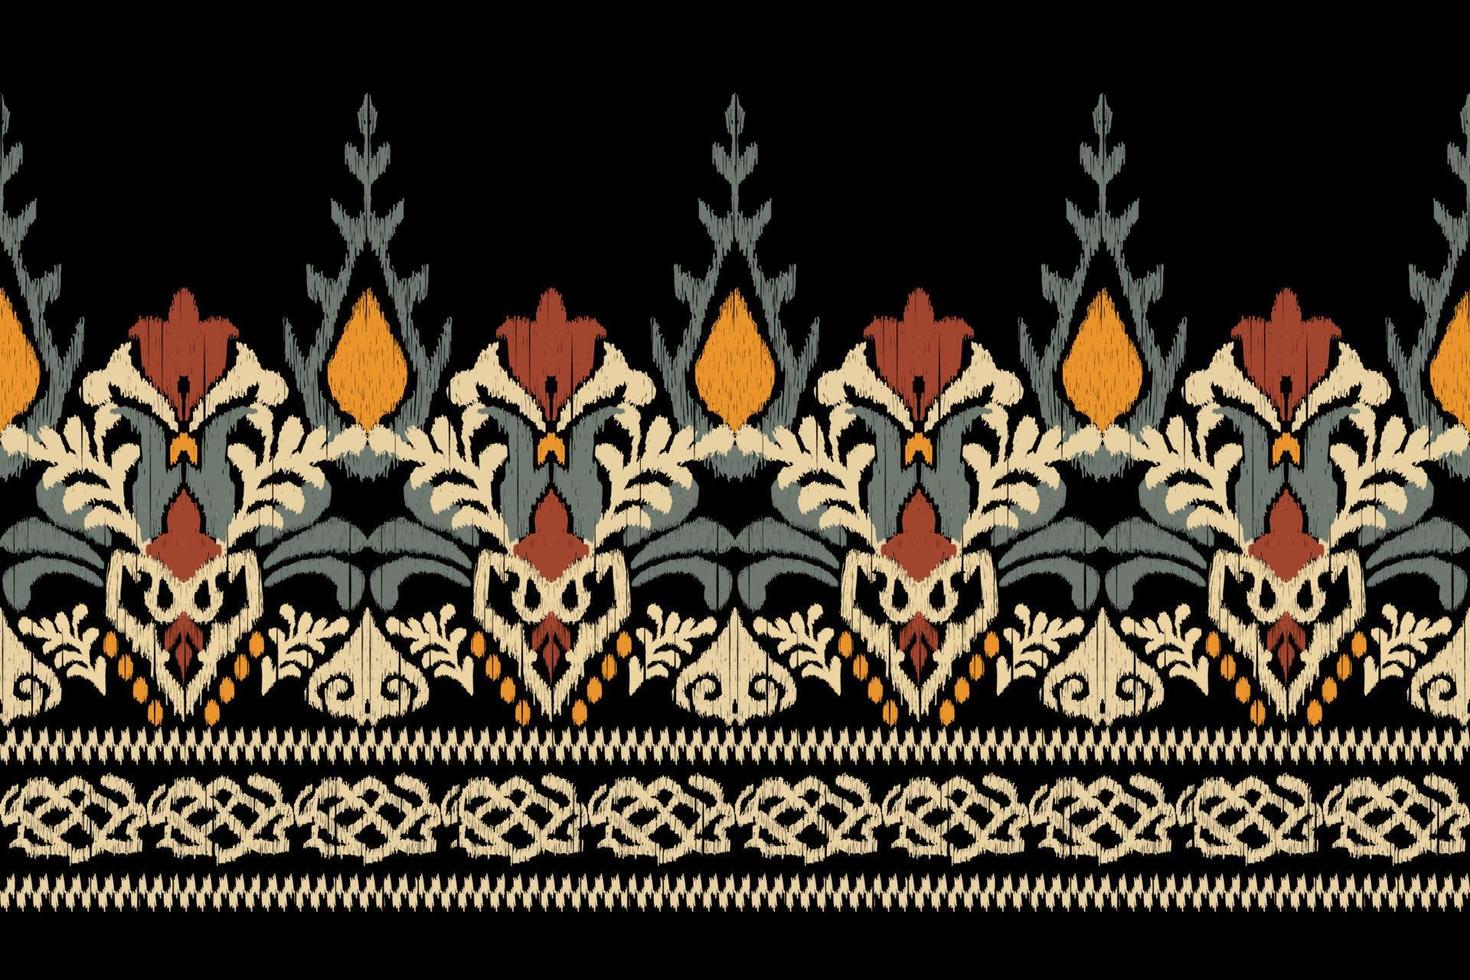 bordado floral ikat paisley sobre fondo negro.patrón oriental étnico geométrico tradicional.ilustración vectorial abstracta de estilo azteca.diseño para textura,tela,ropa,envoltura,decoración,sarong. vector